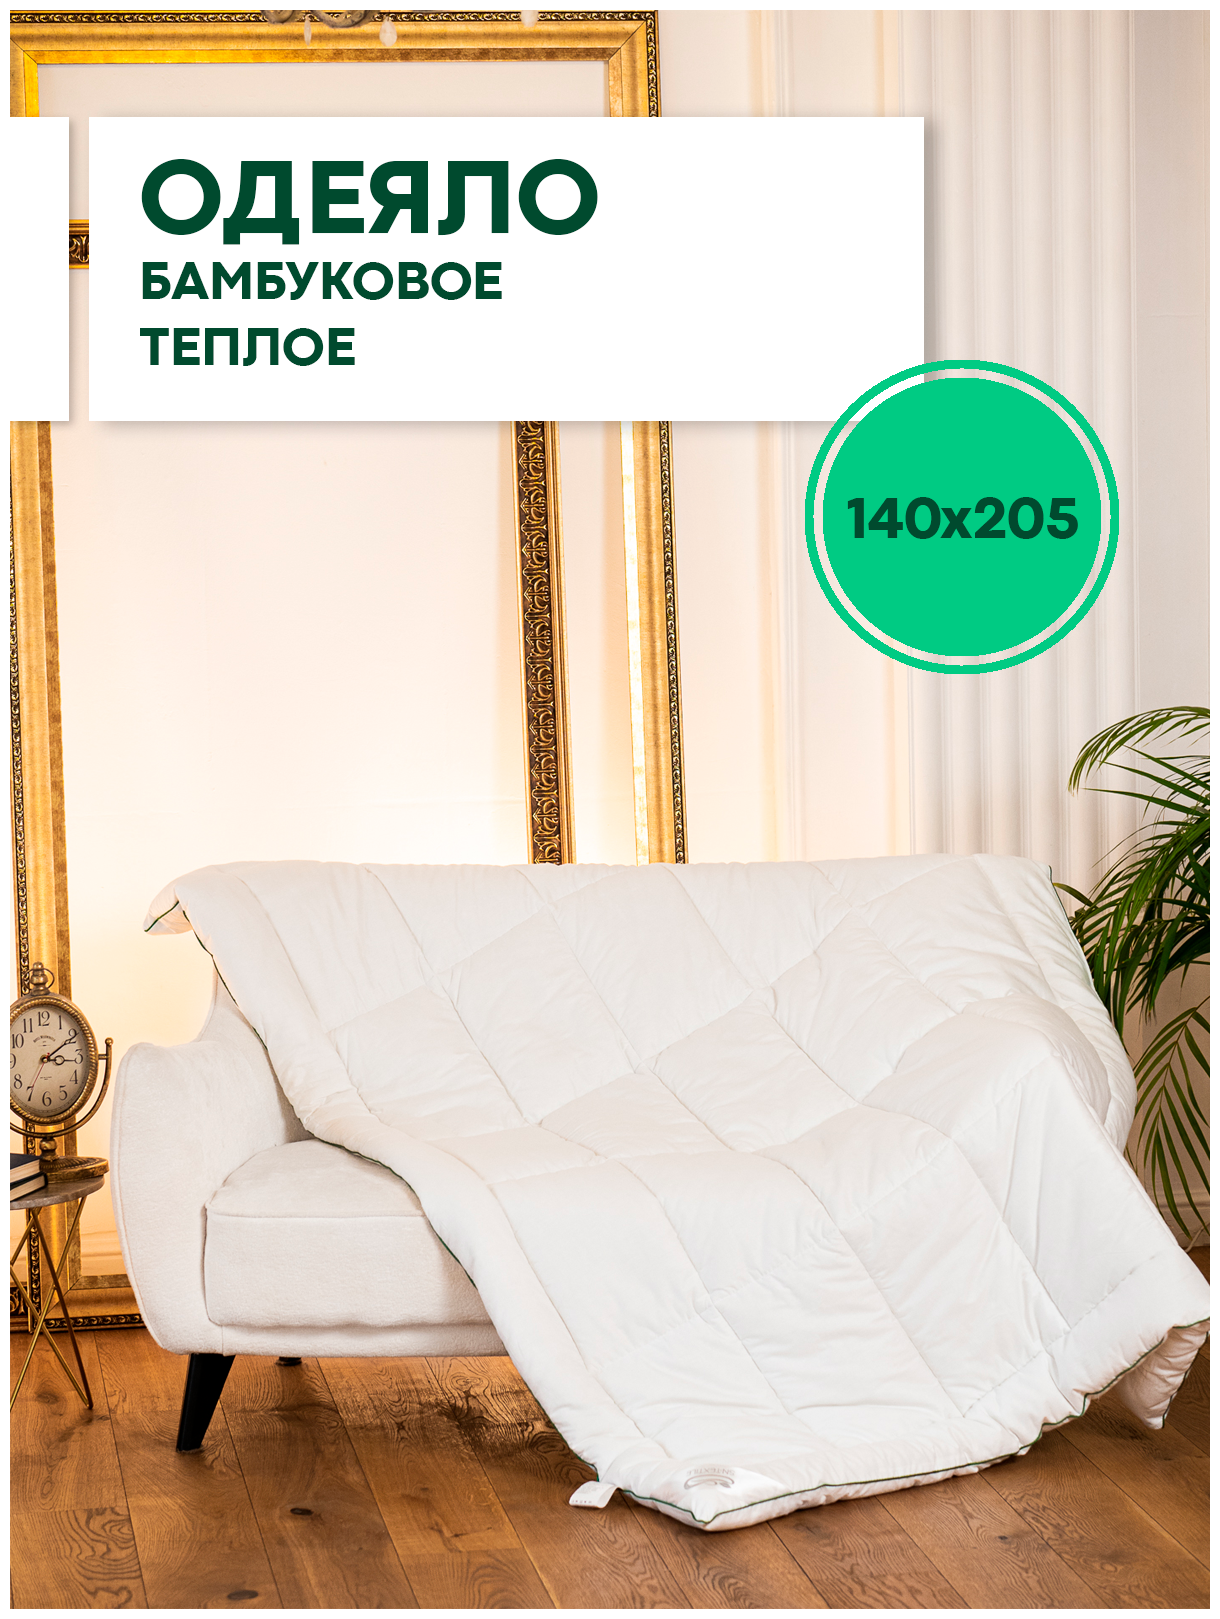 Одеяло из бамбукового волокна сатин Жемчужина 1.5 спальное, 140х205, теплое